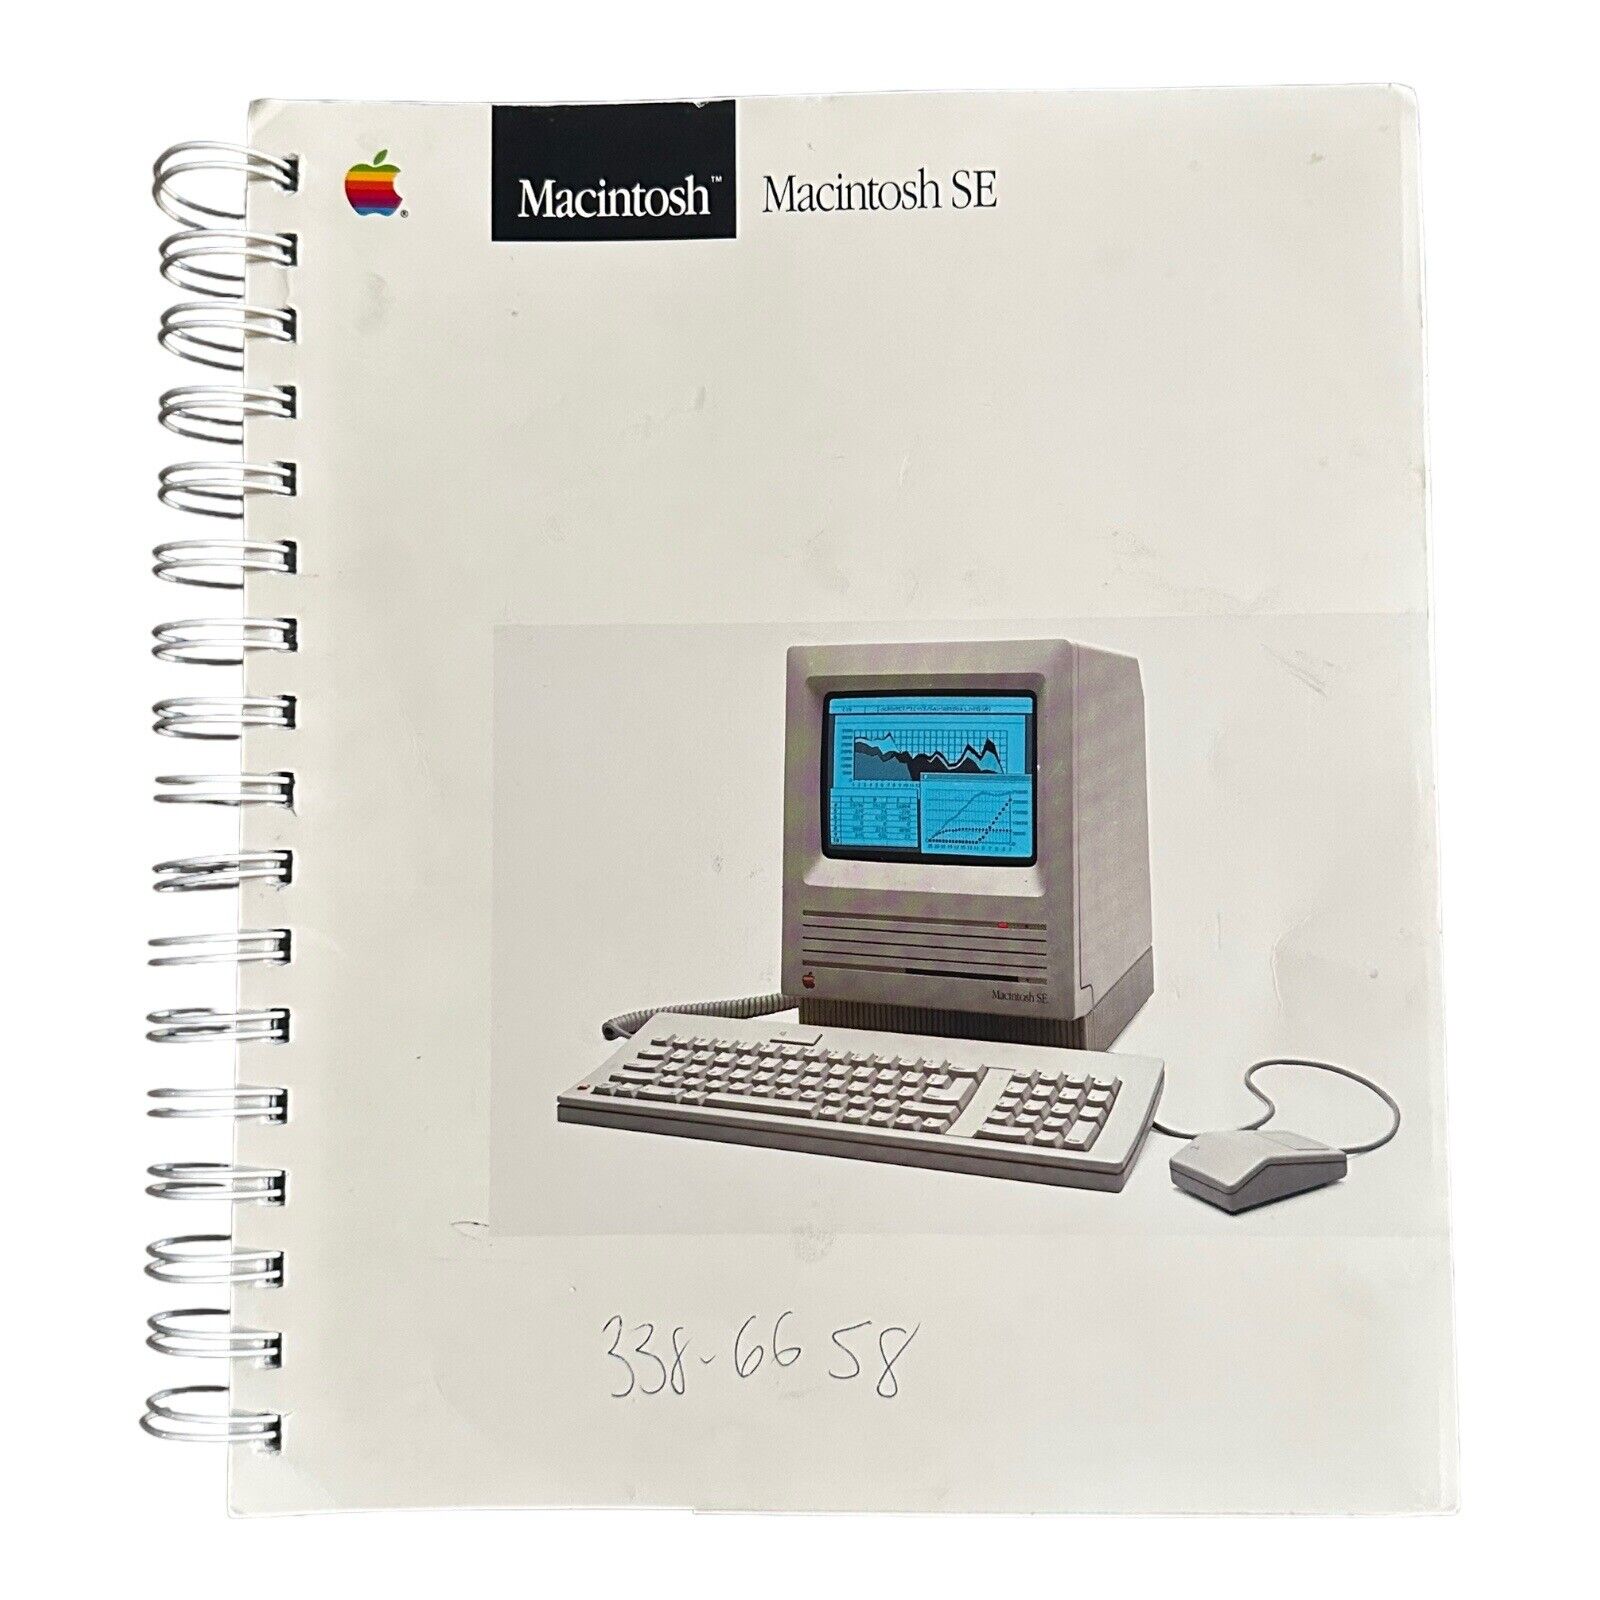 Macintosh SE User Guide Manual Spiral Reference Book 1987 Vintage Apple